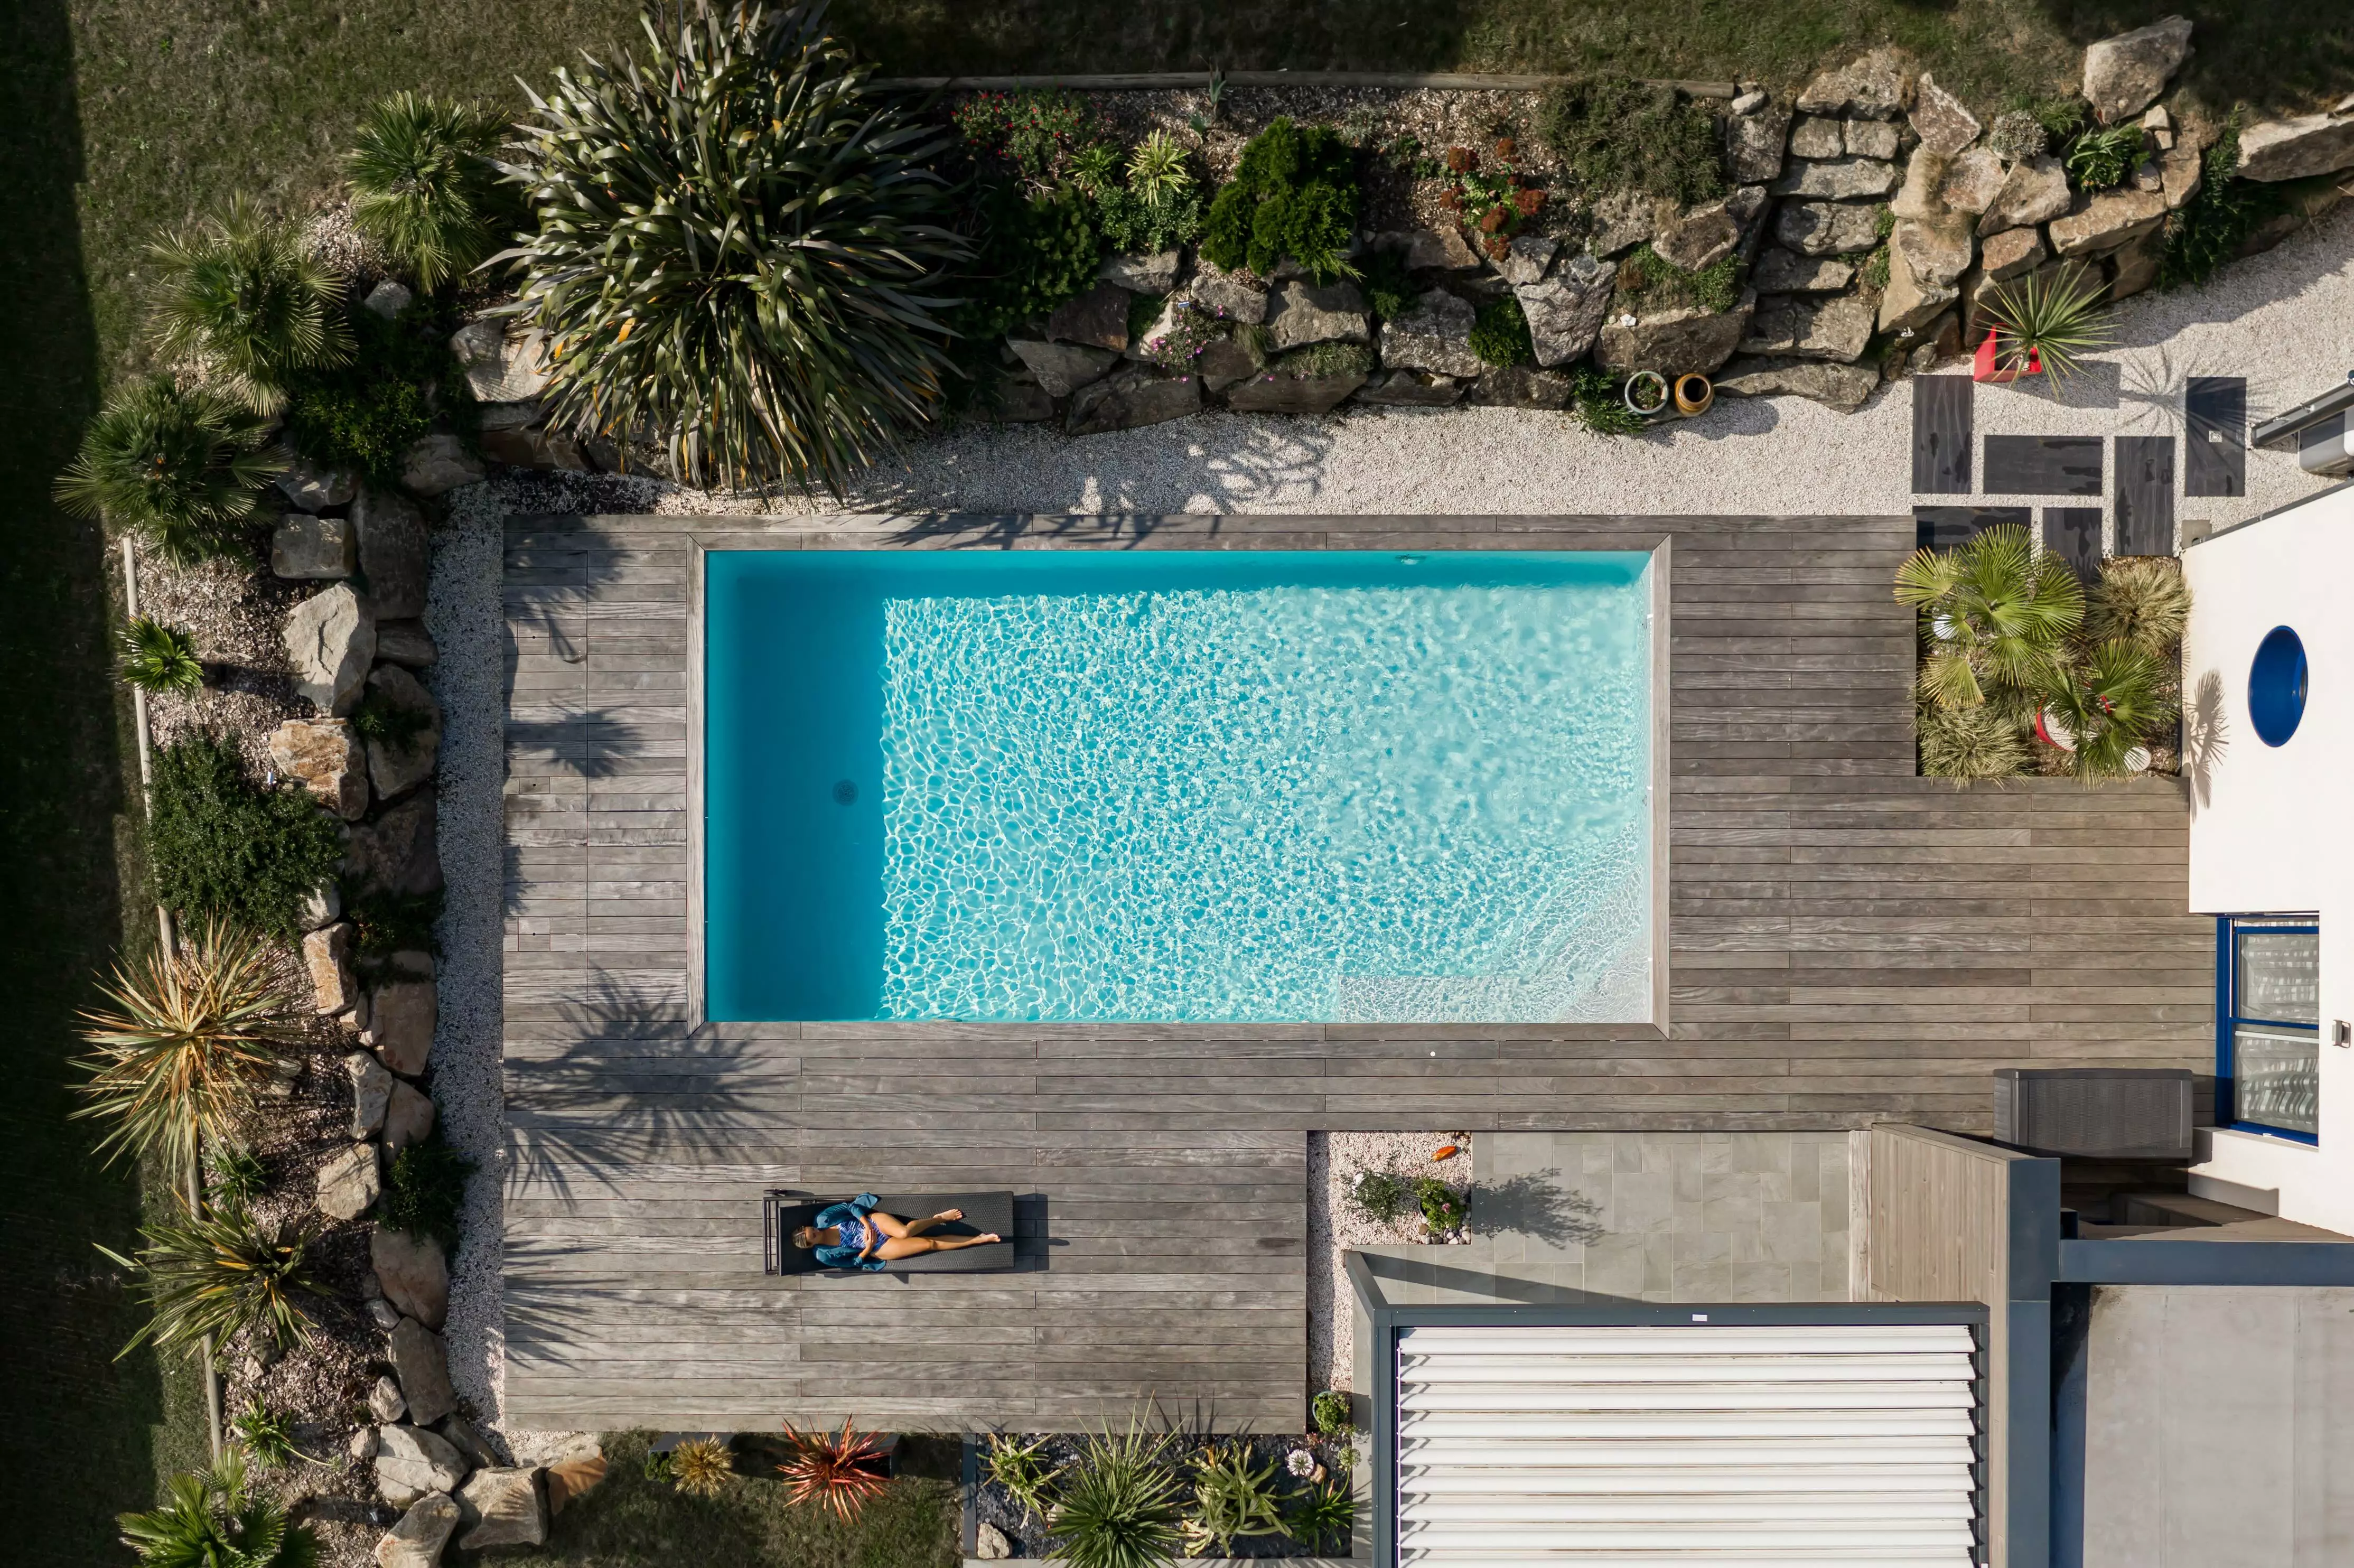 Une habitation où la piscine est au cœur, connectée à un espace rocheux par une terrasse, le tout décoré de plantes exotiques.